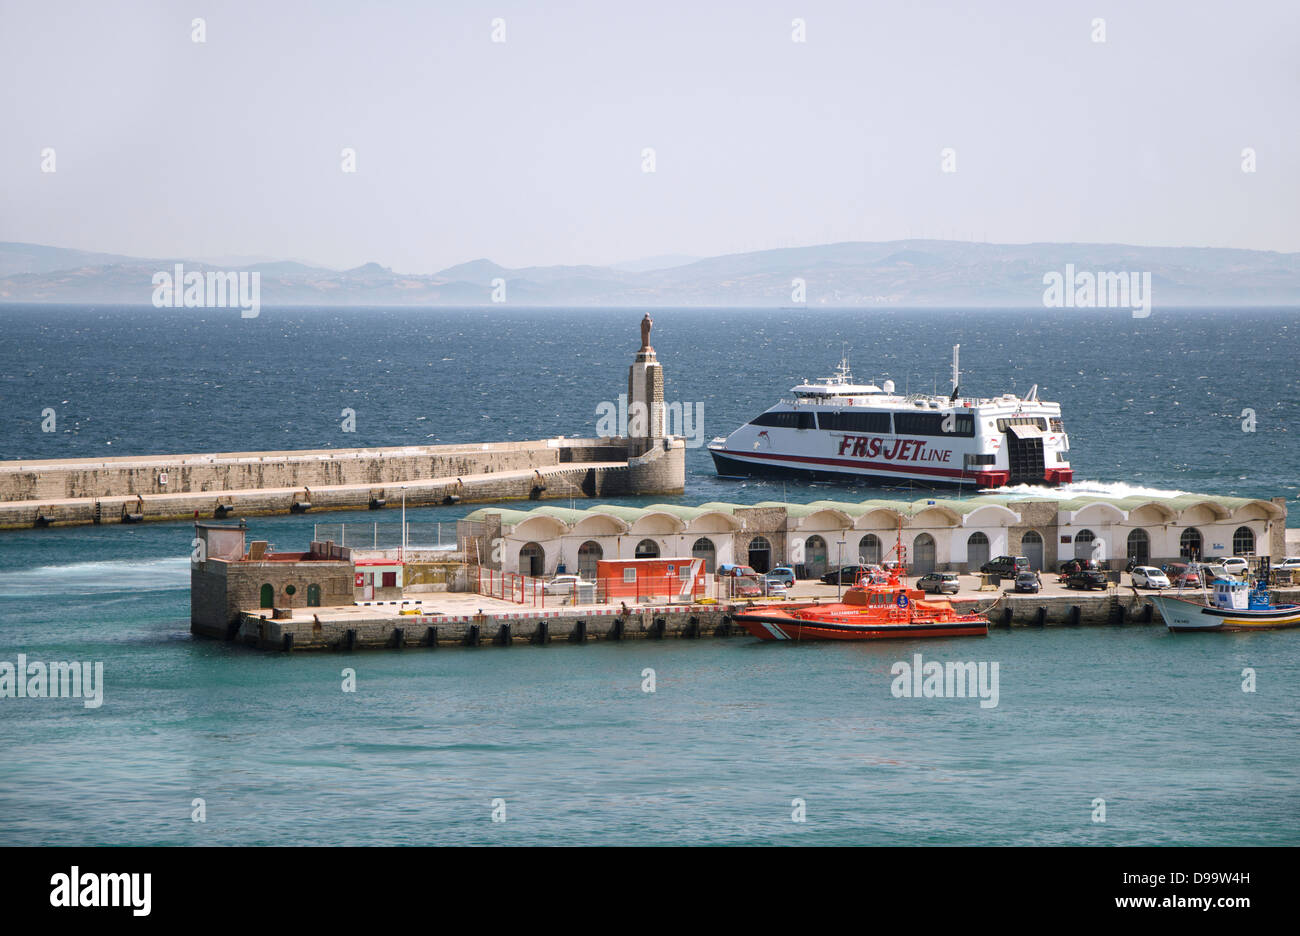 Tarifa Espagne. Ferry partant du port de Tarifa vers Tanger au Maroc.  Andalousie, Espagne Photo Stock - Alamy